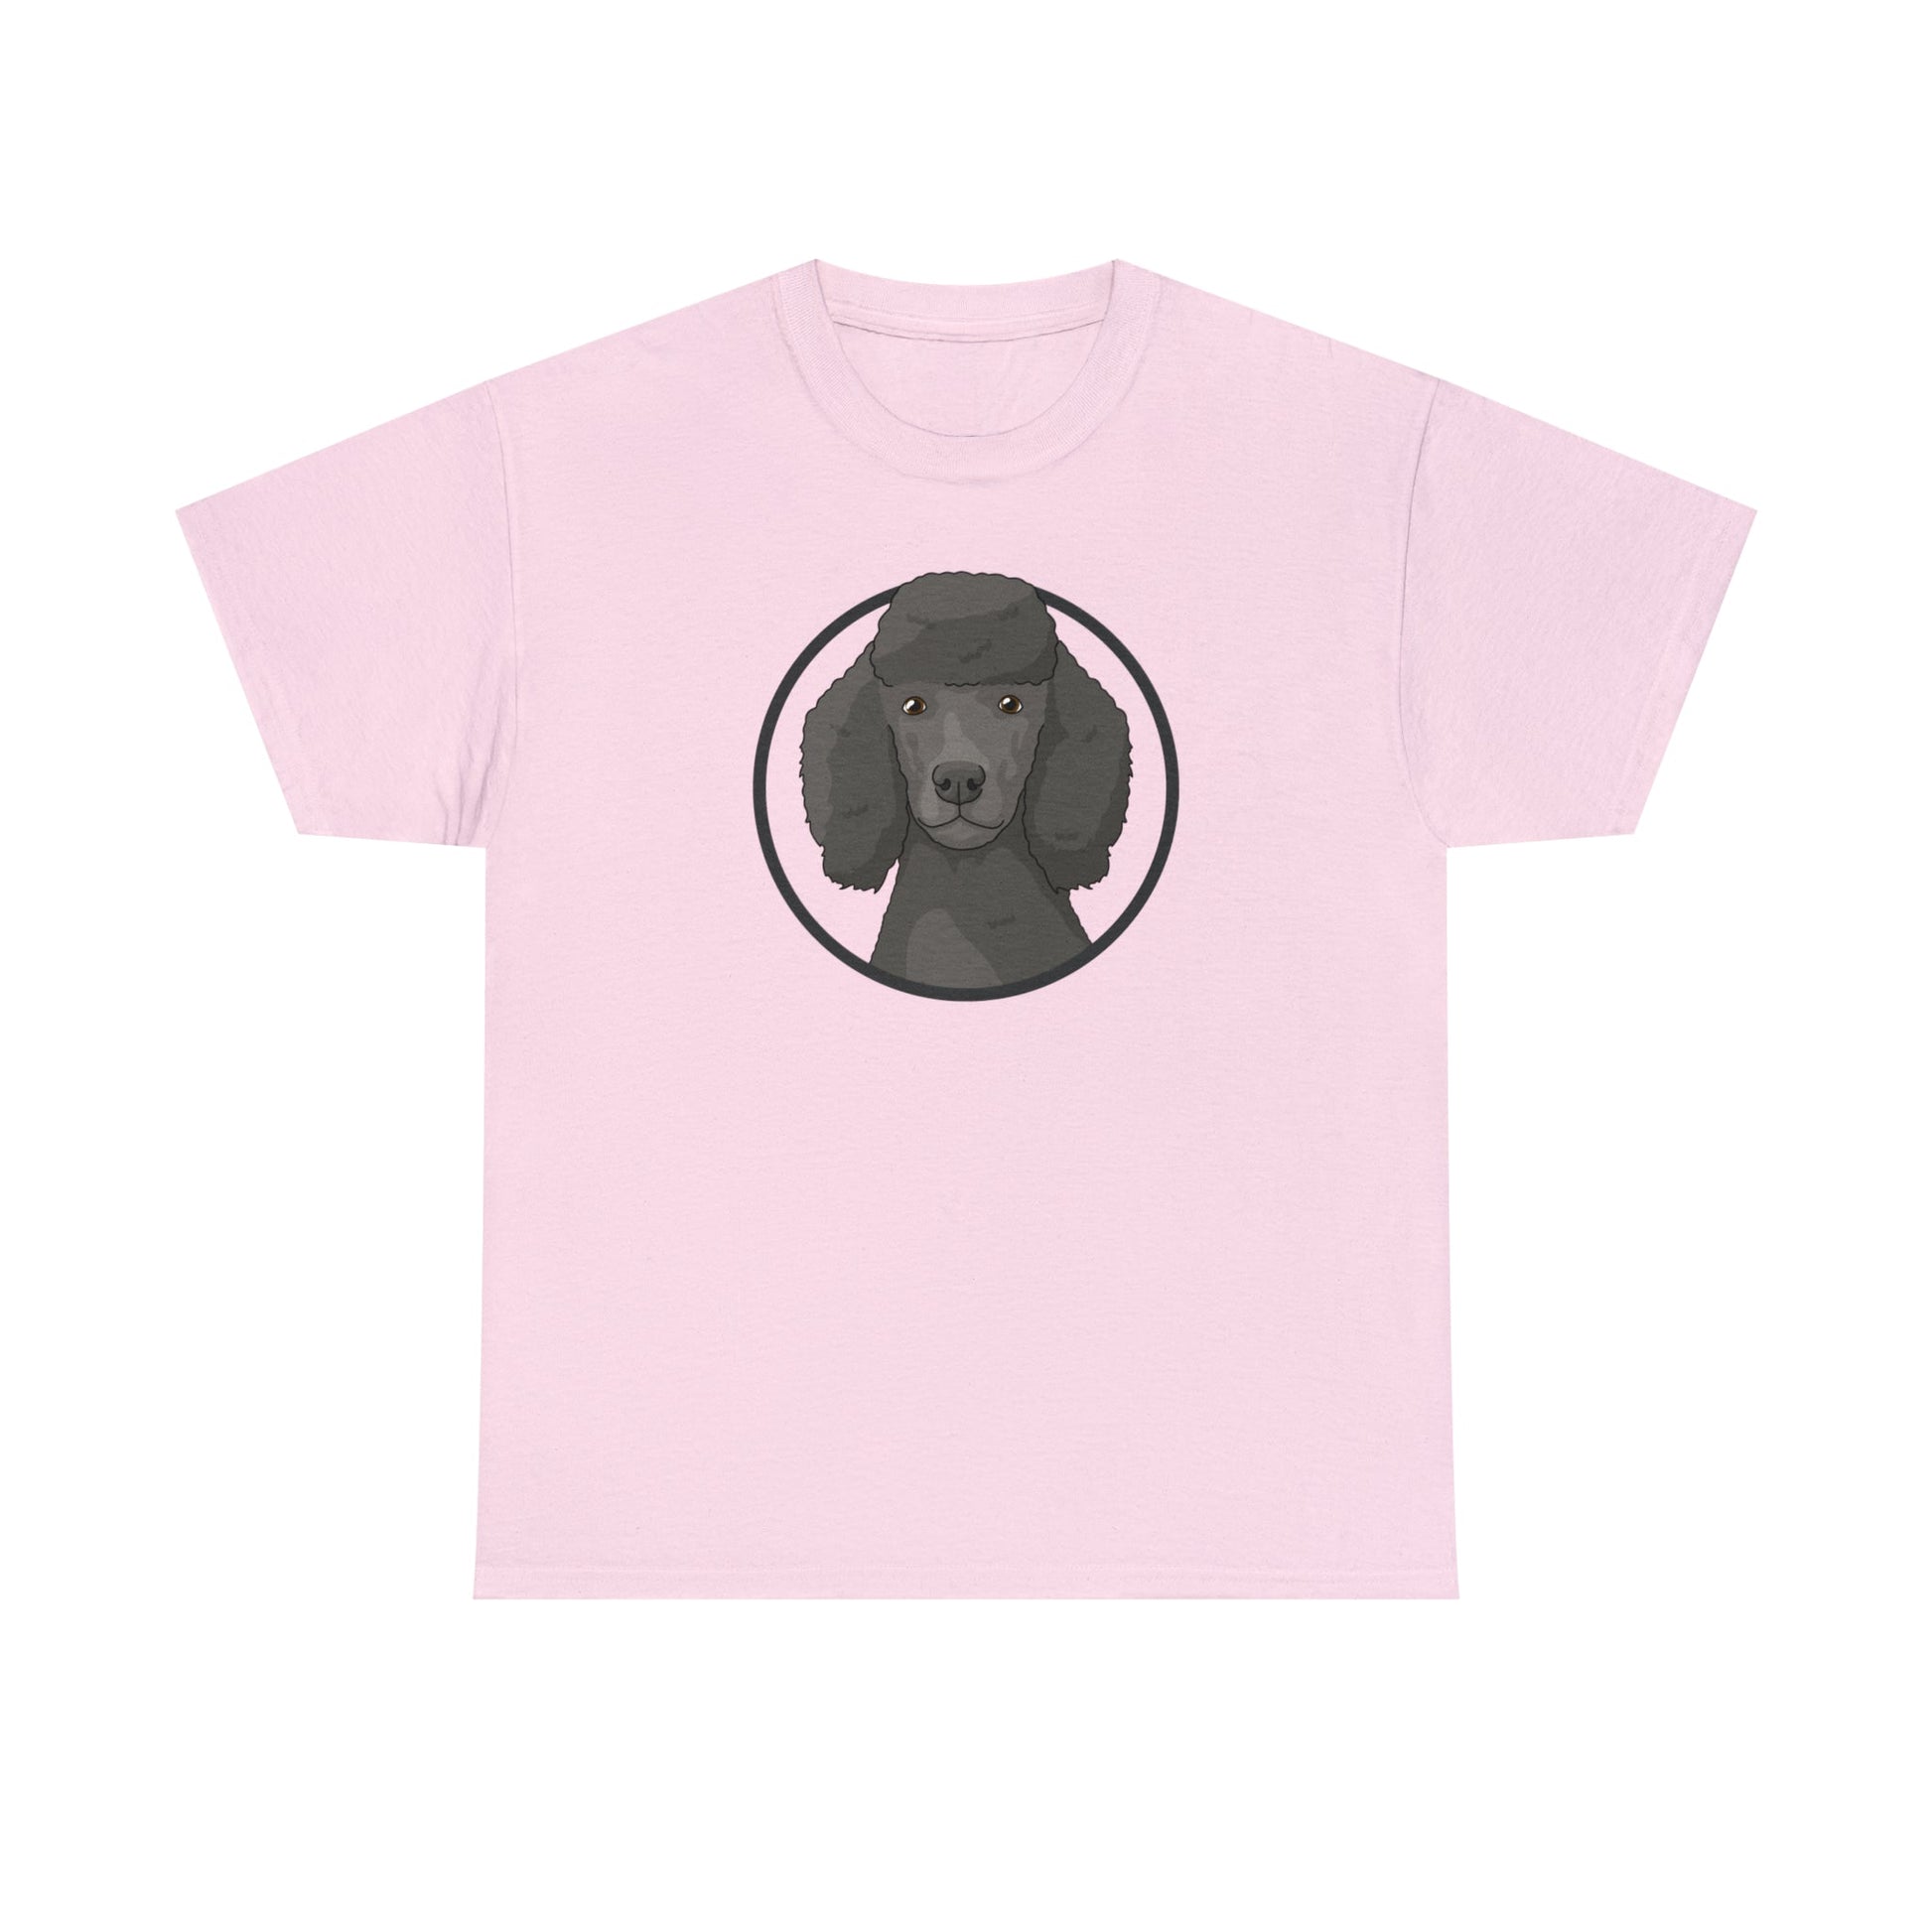 Poodle Circle | T-shirt - Detezi Designs-12075341408548429230